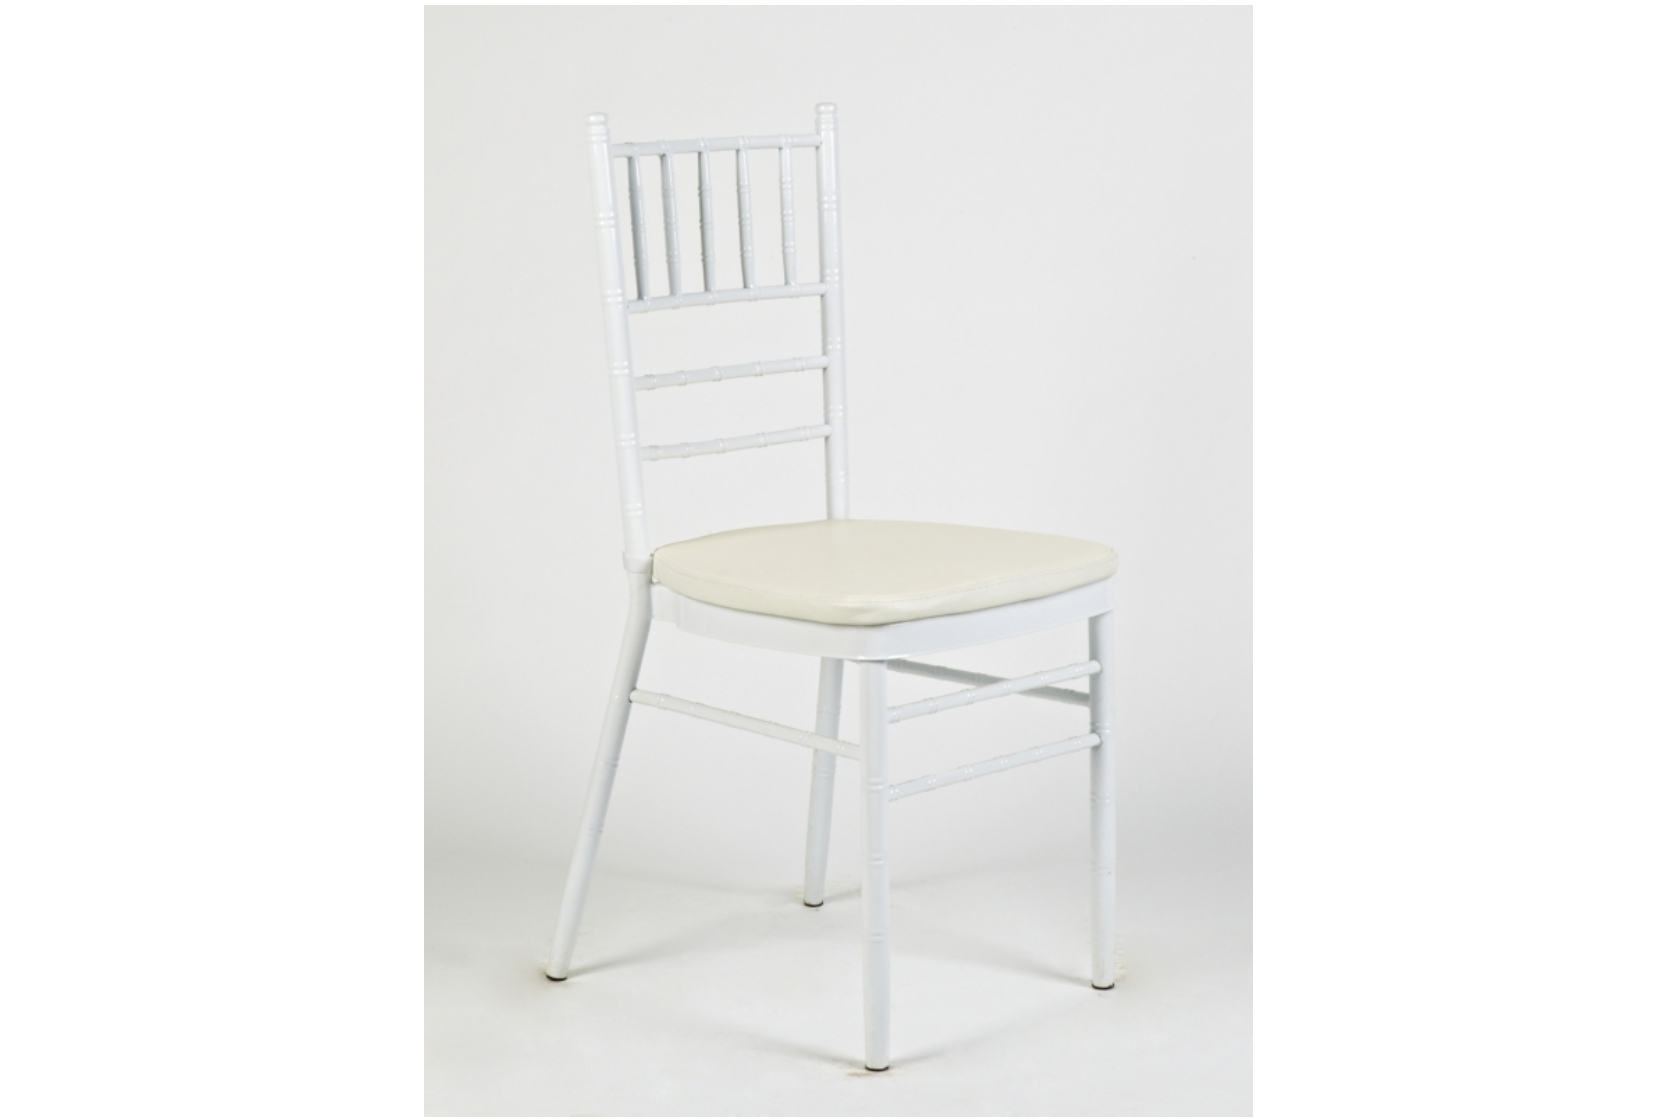 Amerikai szék fehér